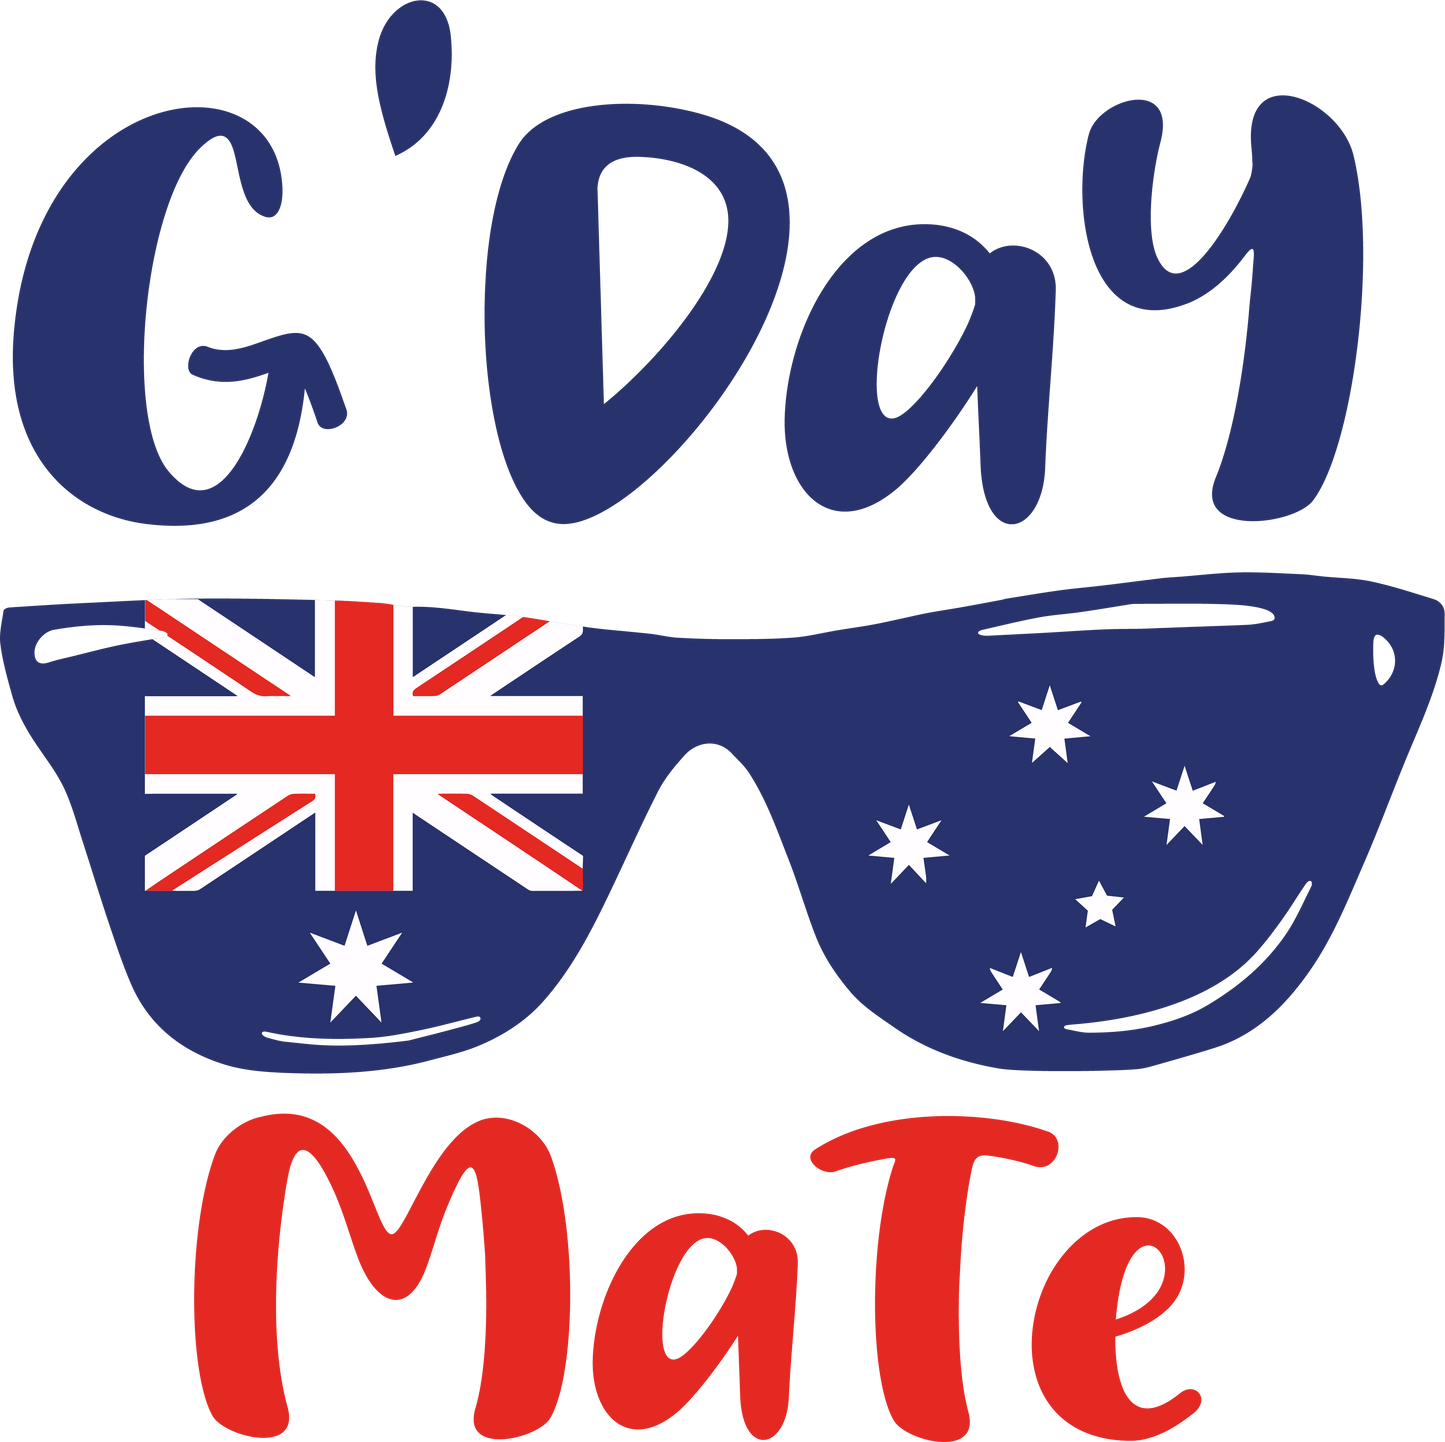 G'Day Mate & Australian Flag Glasses